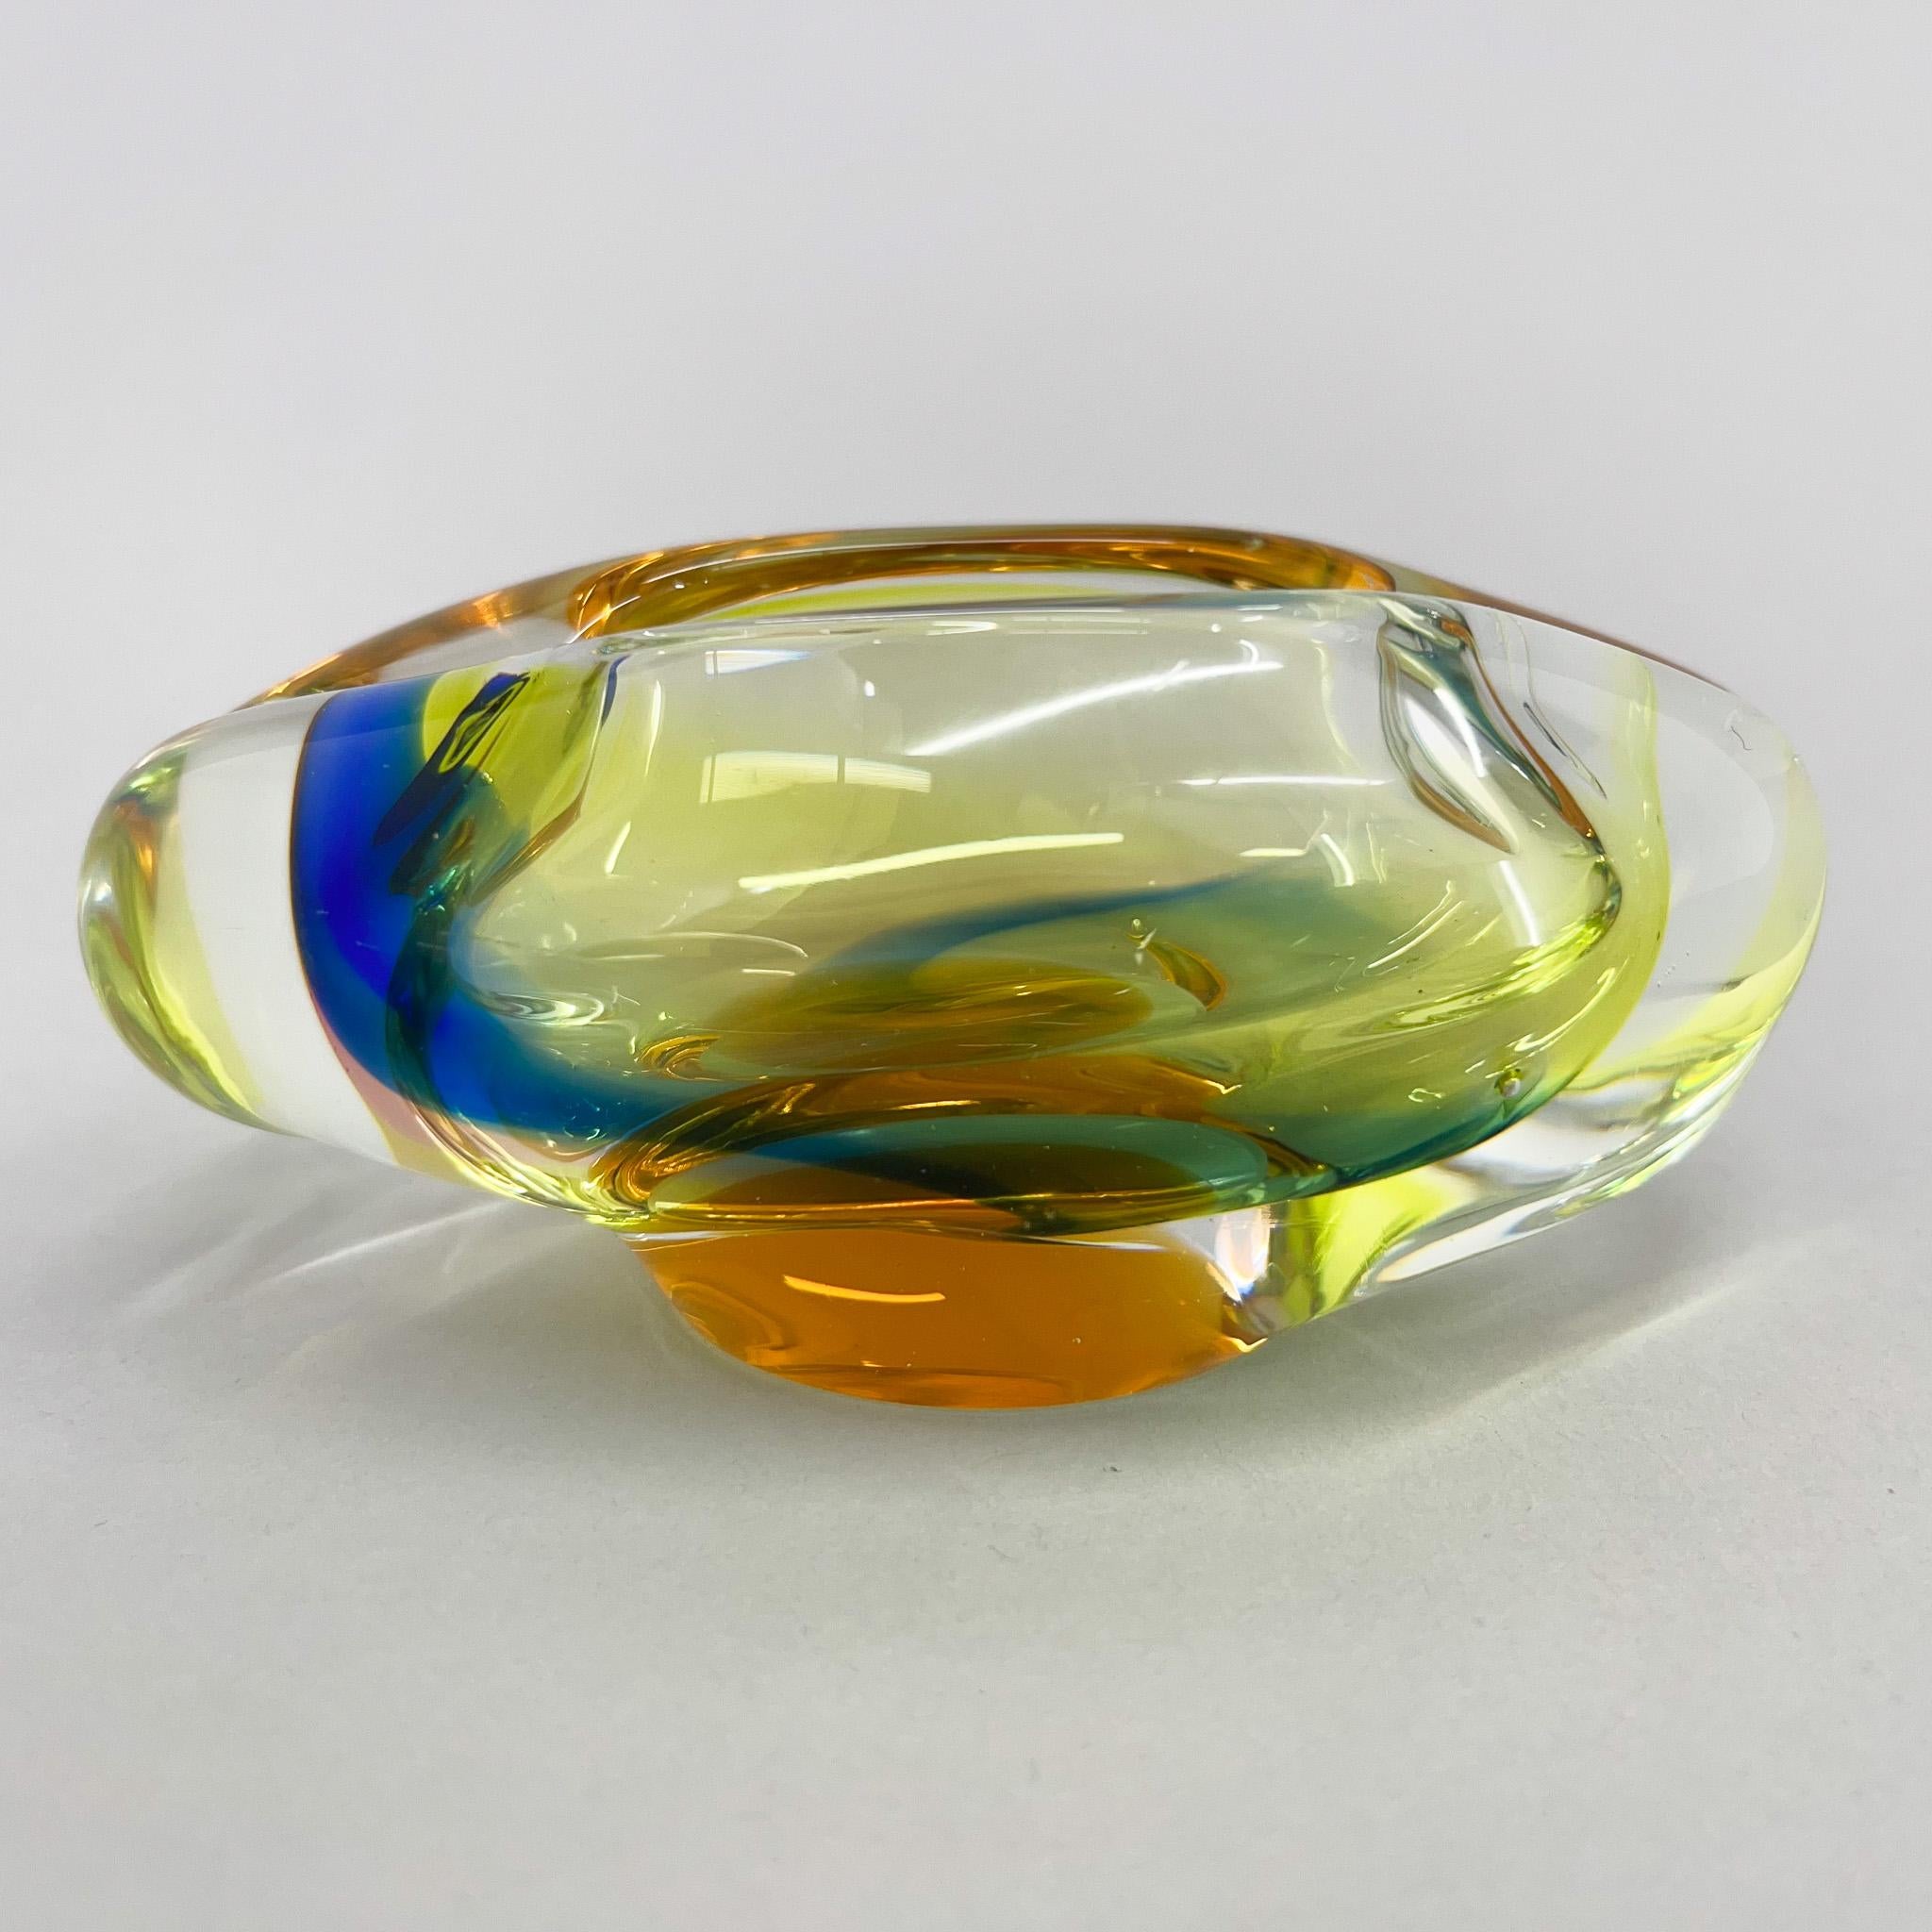 Cendrier bohème multicolore en verre vintage des années 1960. Le cendrier a été fabriqué en Tchécoslovaquie dans la verrerie de Novy Bor (Borocrystal). Très bon état vintage. 